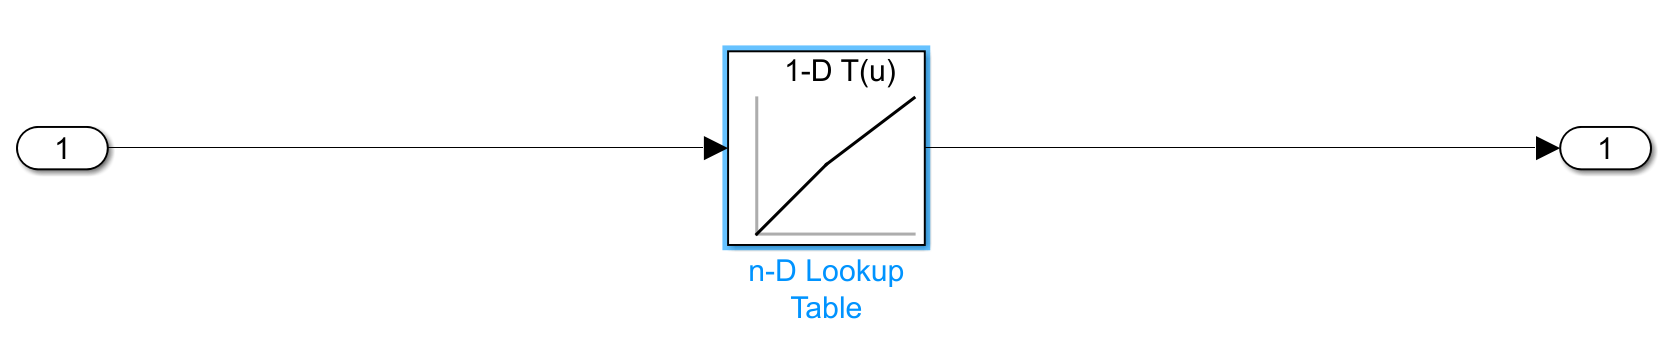 包含连接在导入和输出之间的n-D查找表的模型。